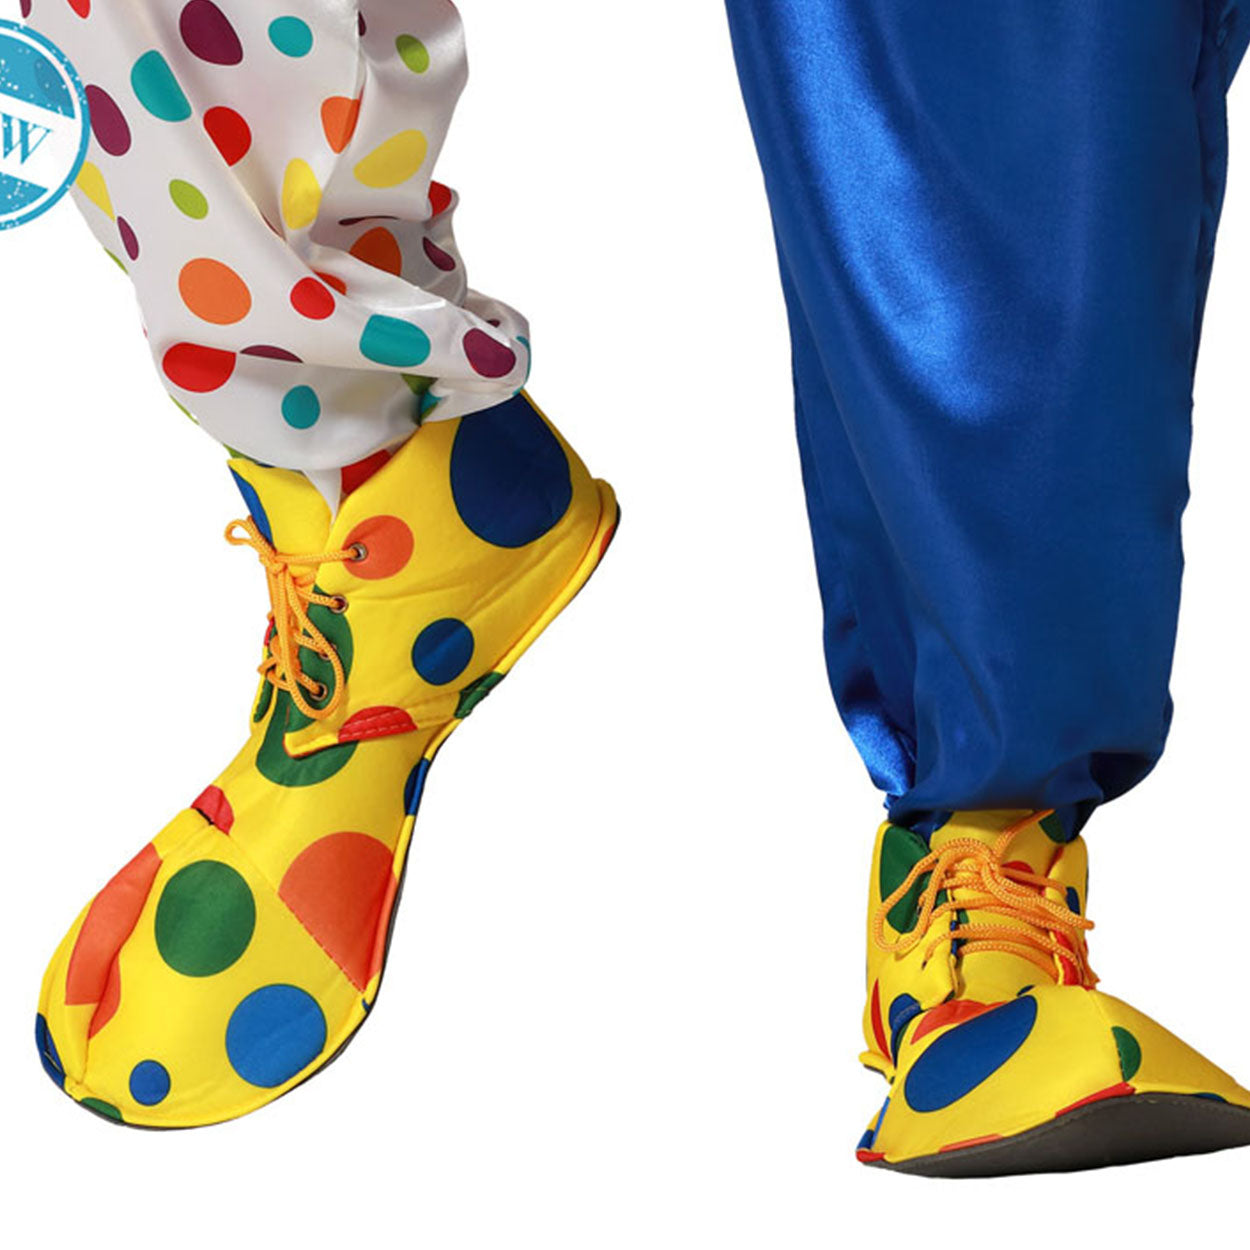 Scarpa travestimento clown pagliaccio gialla con pois cm 36